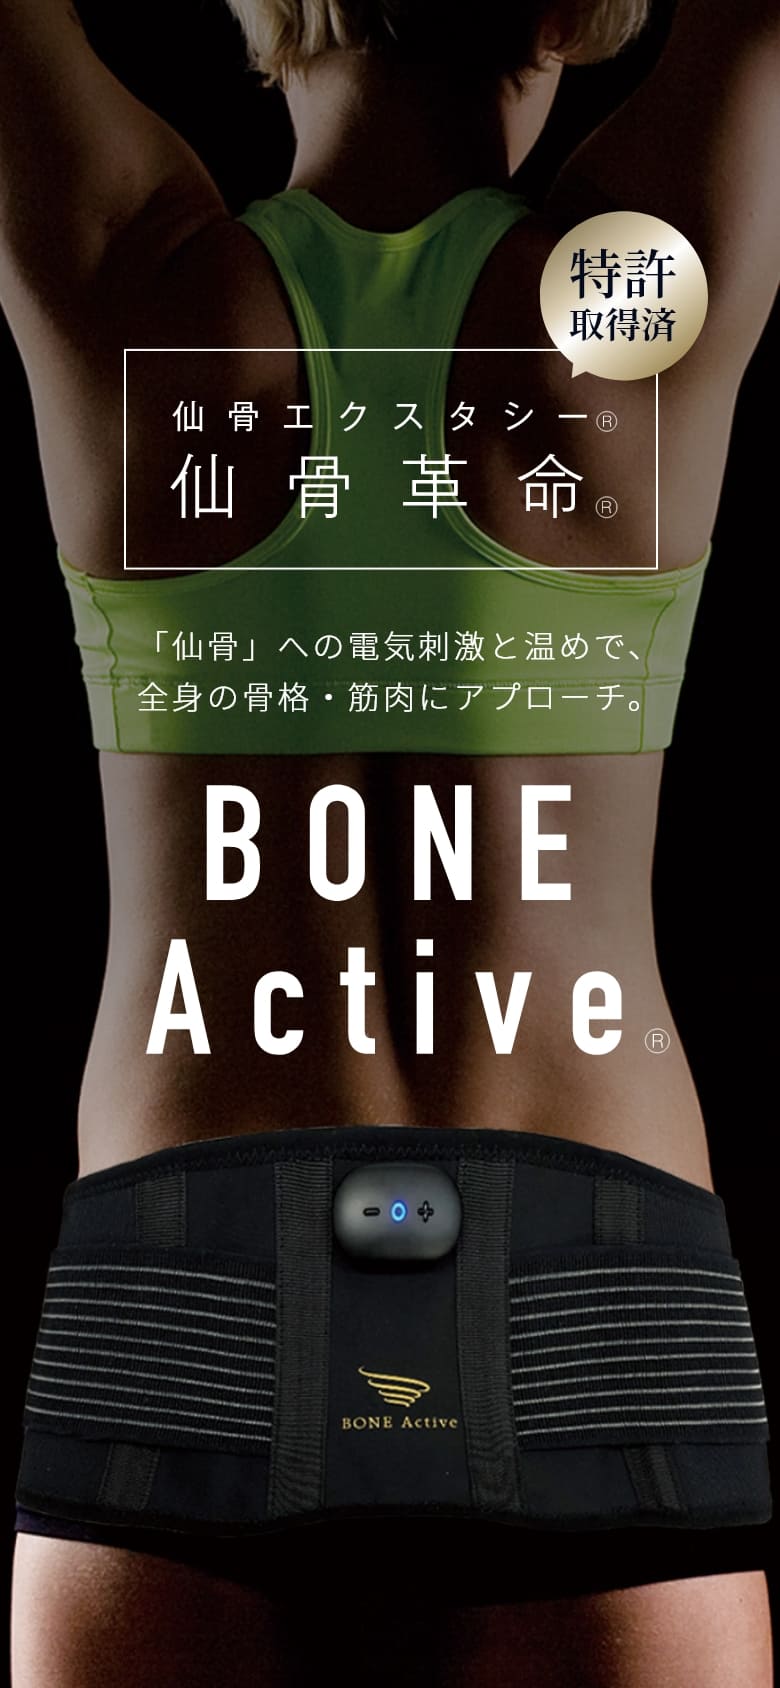 仙骨への電気刺激と温めで、全身の骨格・筋肉にアプローチするBONE Active